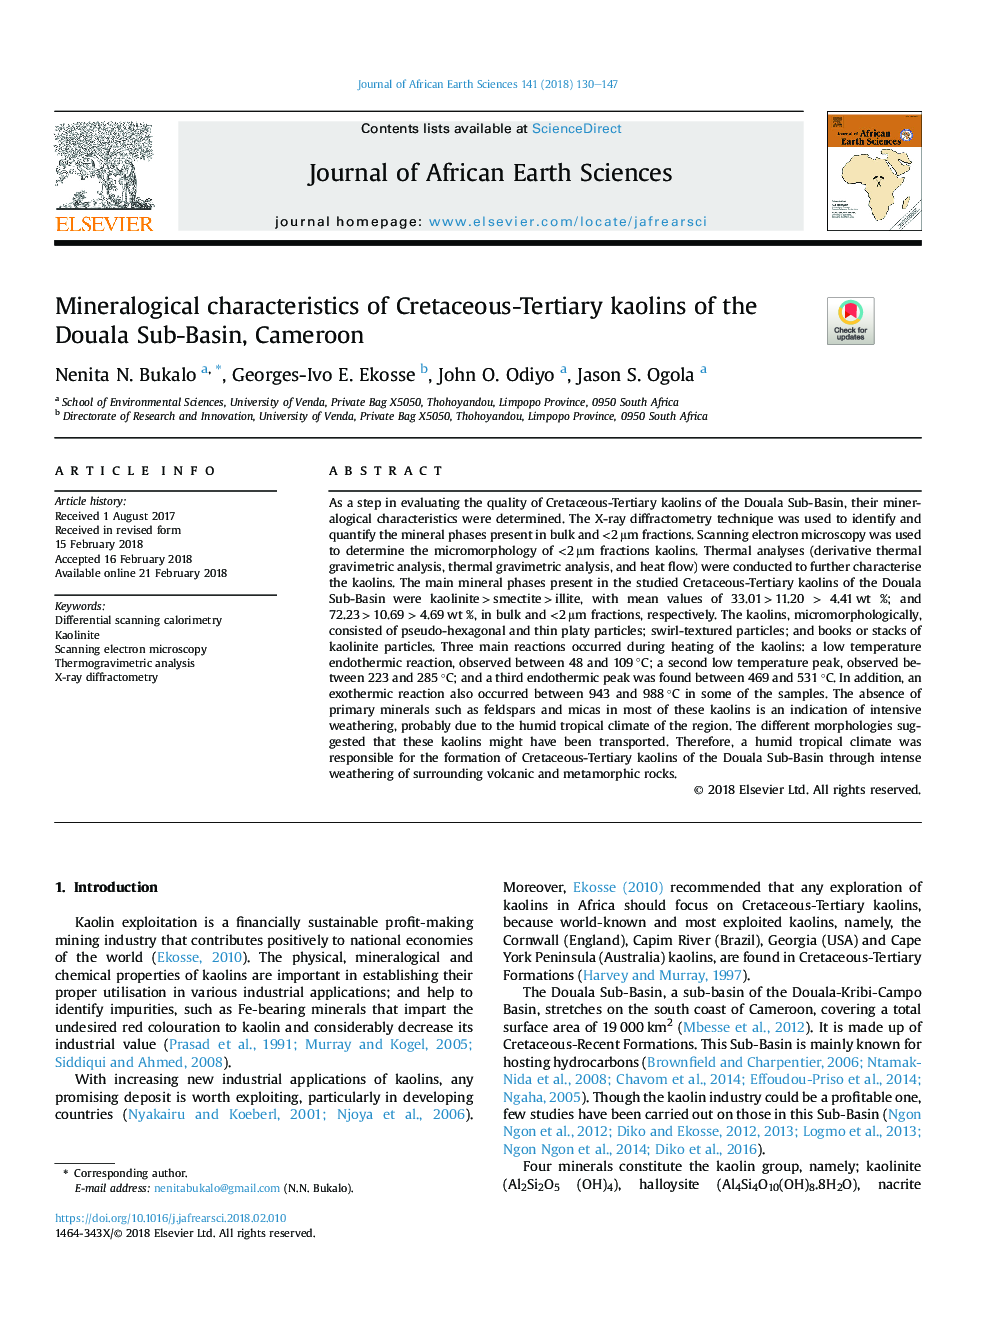 ویژگی های کانی شناسی کائولن های کرتاسه-سومری در حوزه آبریز دوال، کامرون